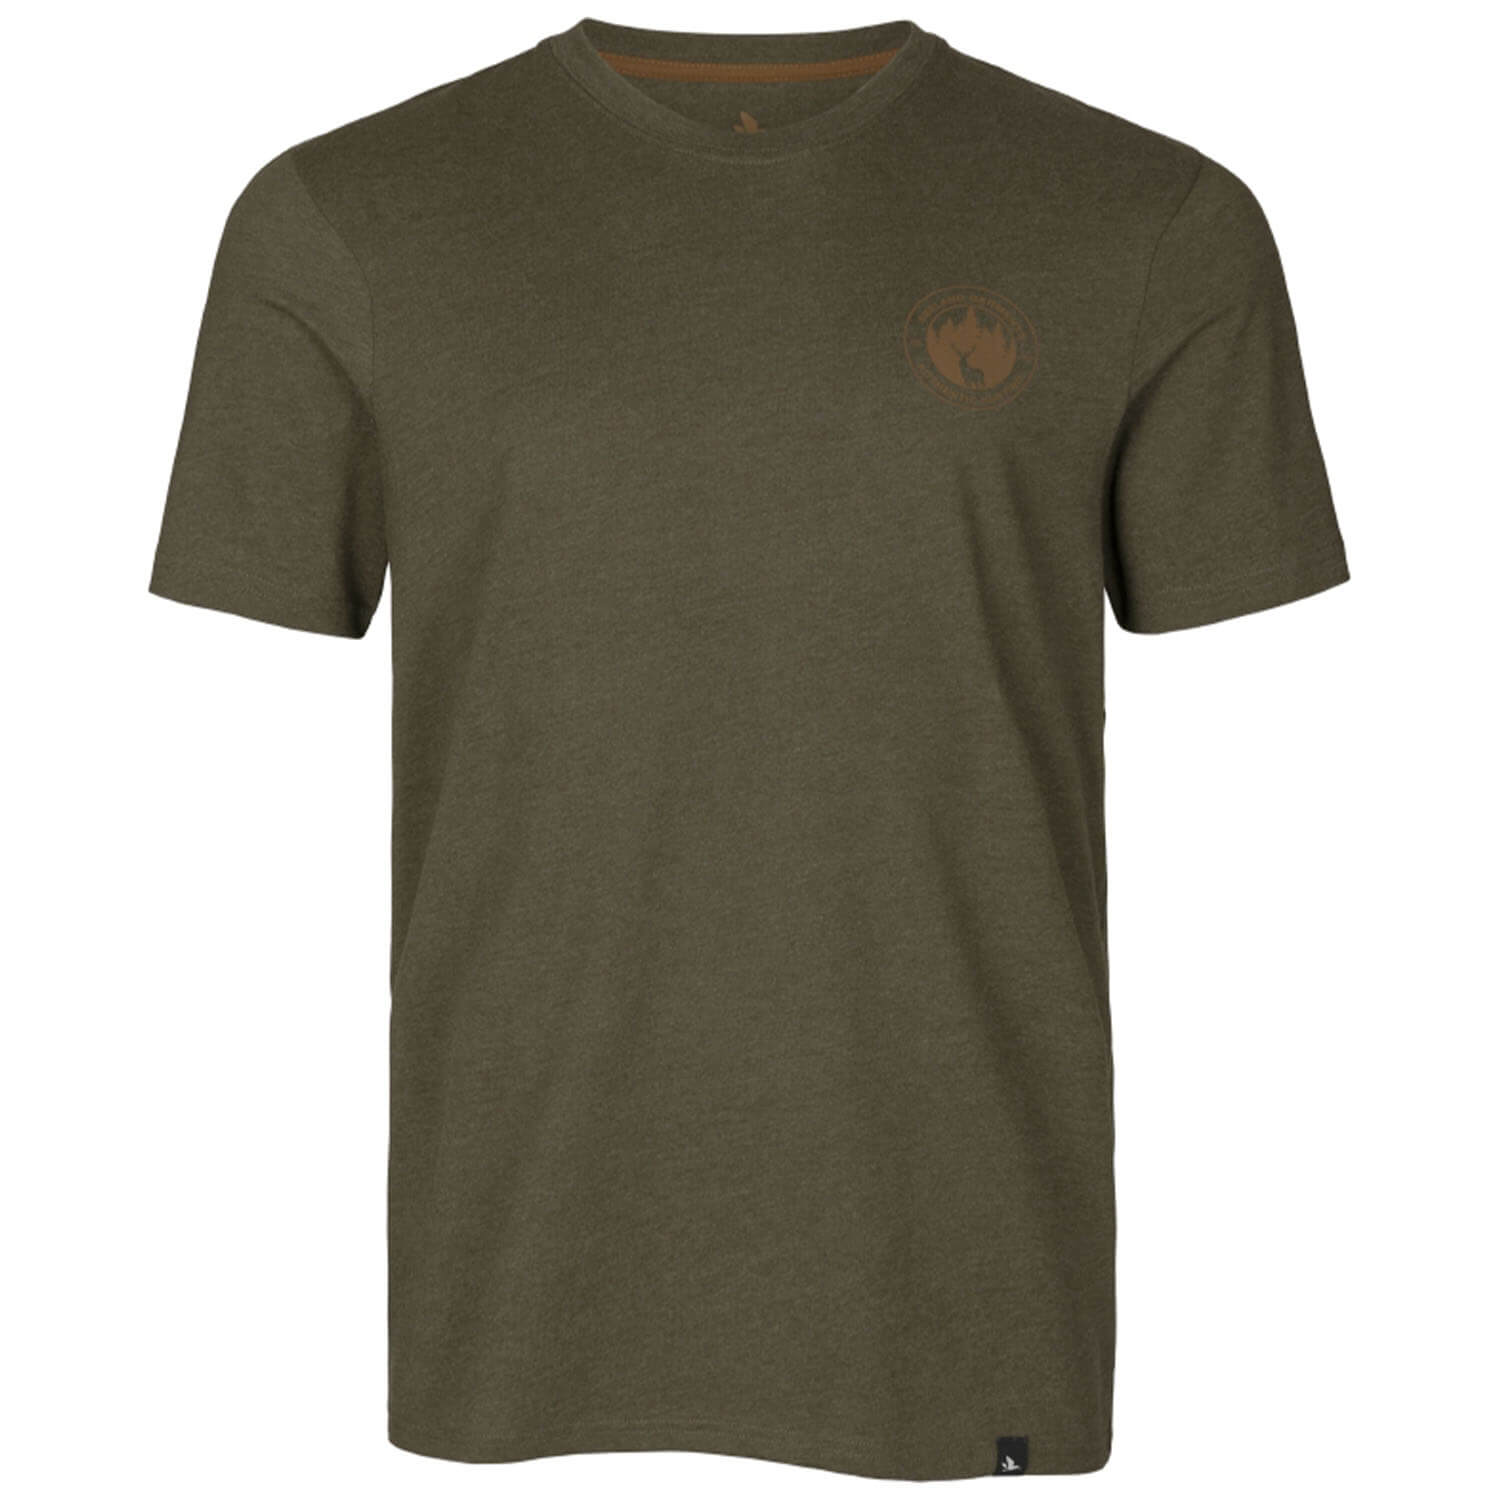 Seeland T-shirt Saker (pine green melange)